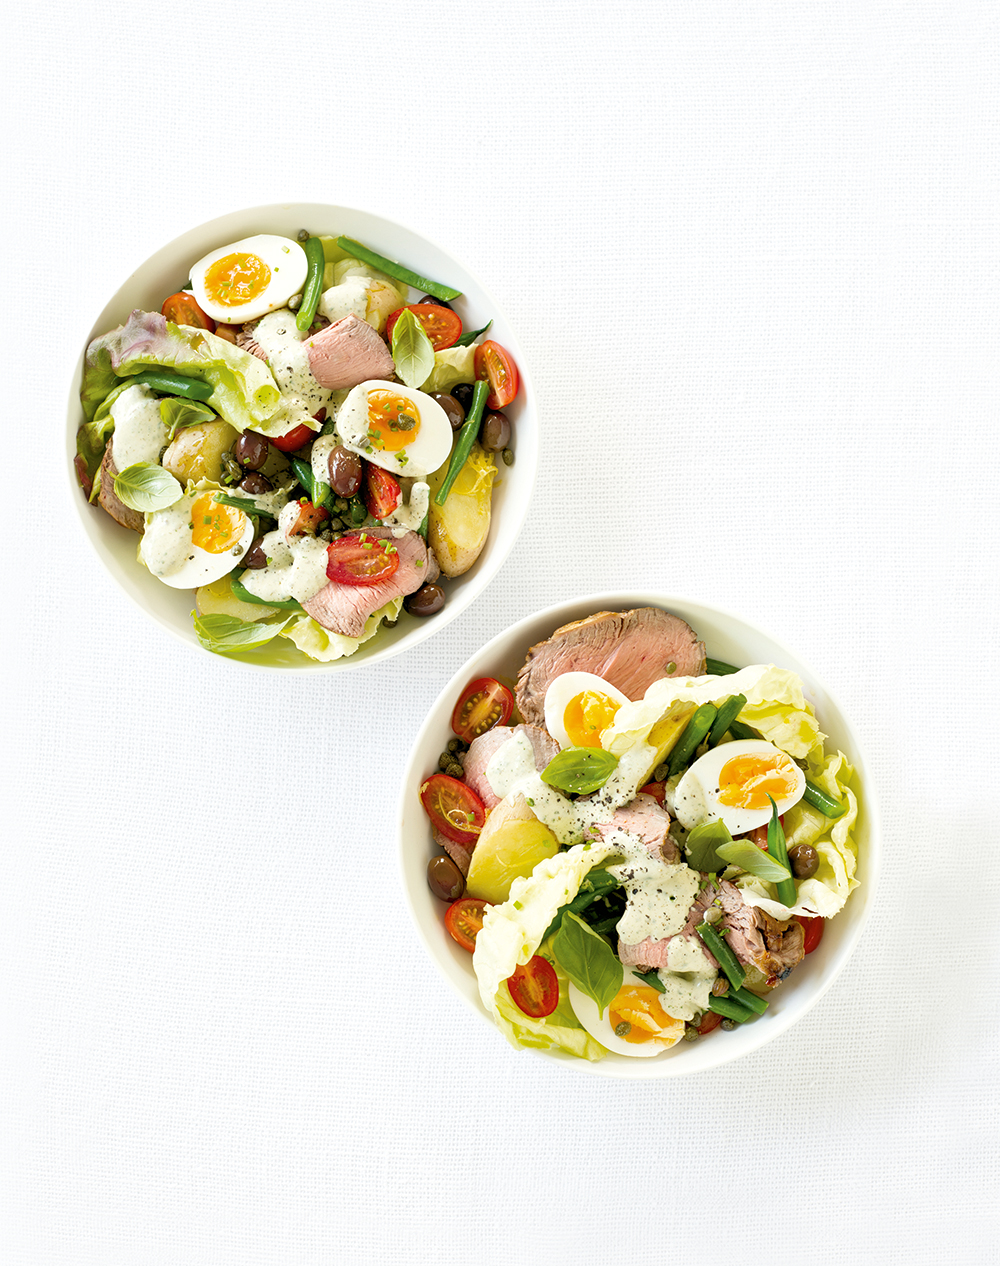 Veal “Nicoise” Salad